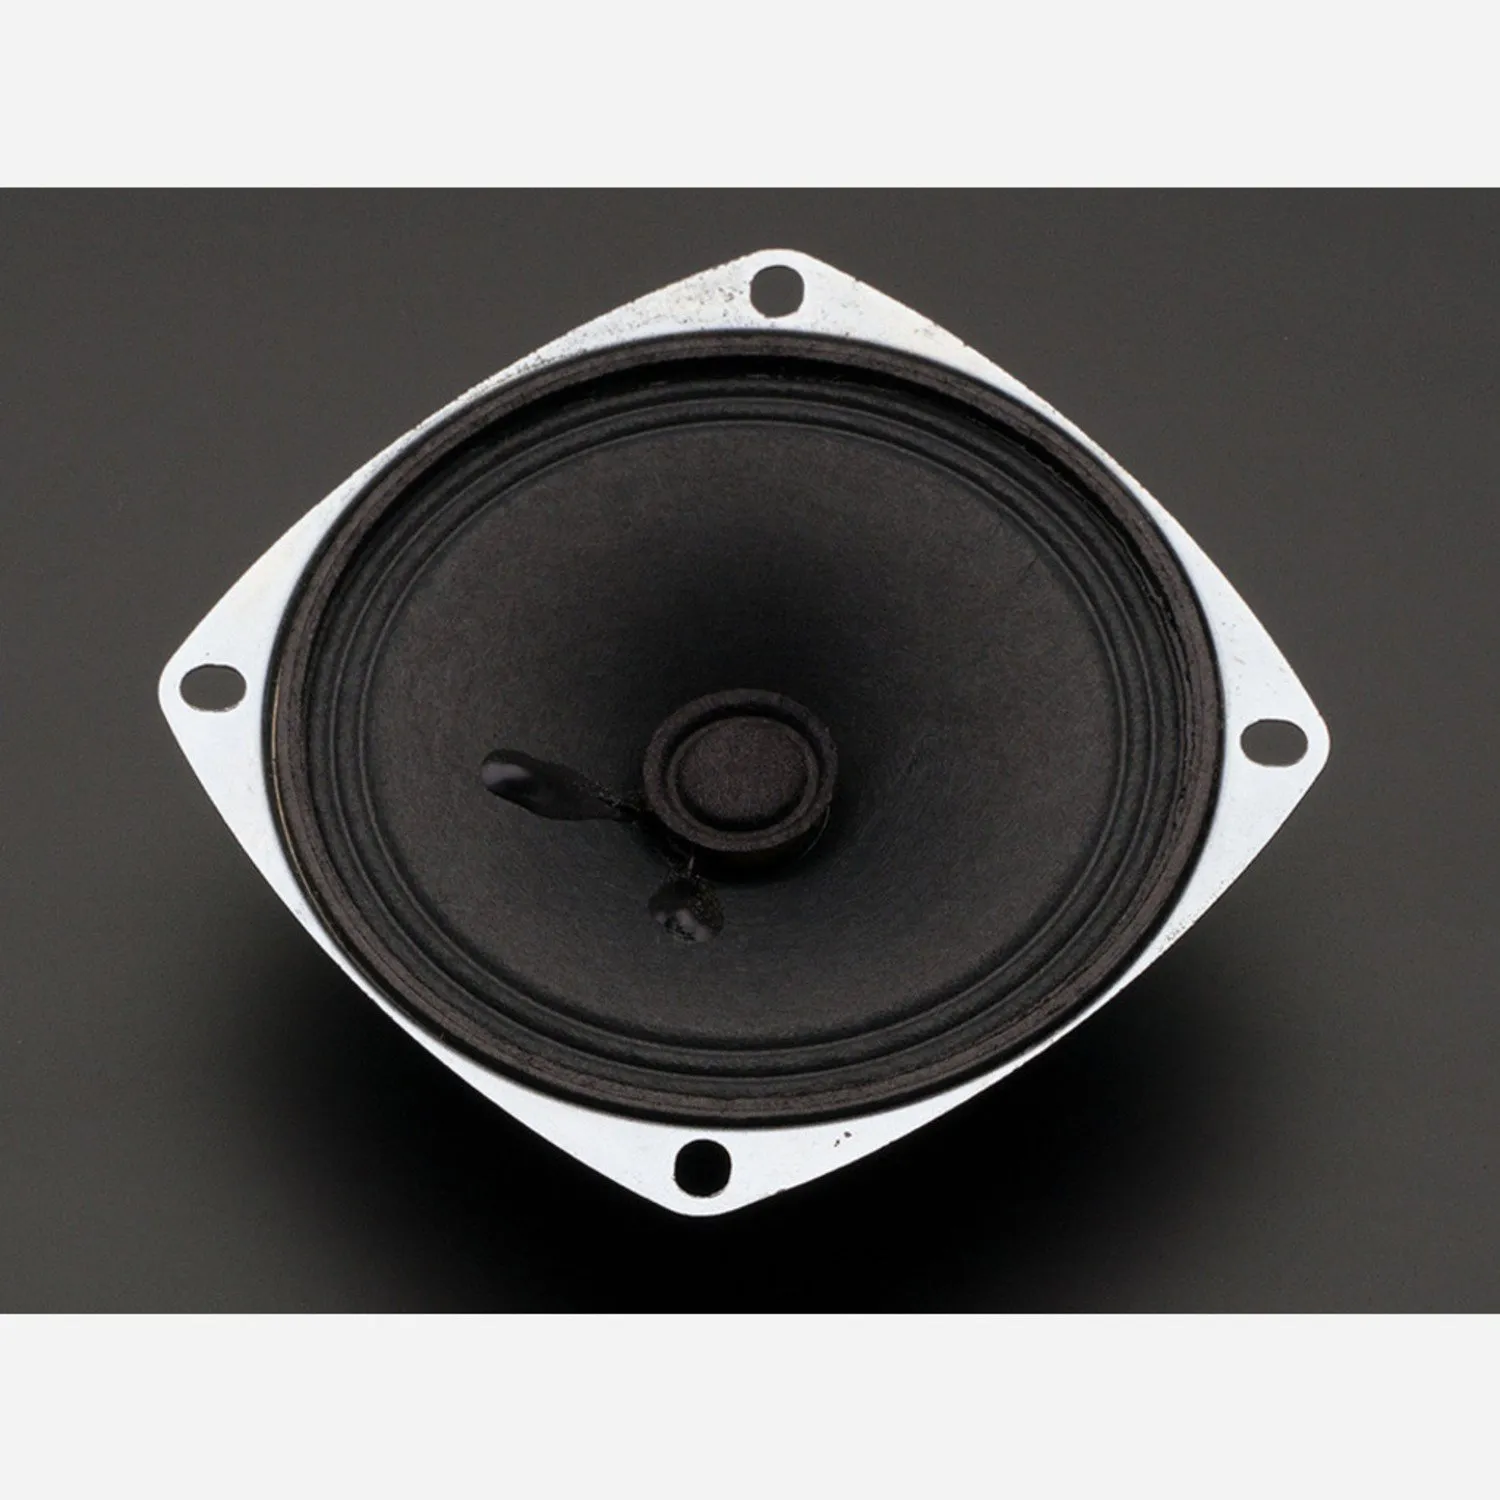 Photo of Speaker - 3inch  / 76.2mm  Diameter - 4 Ohm 3 Watt